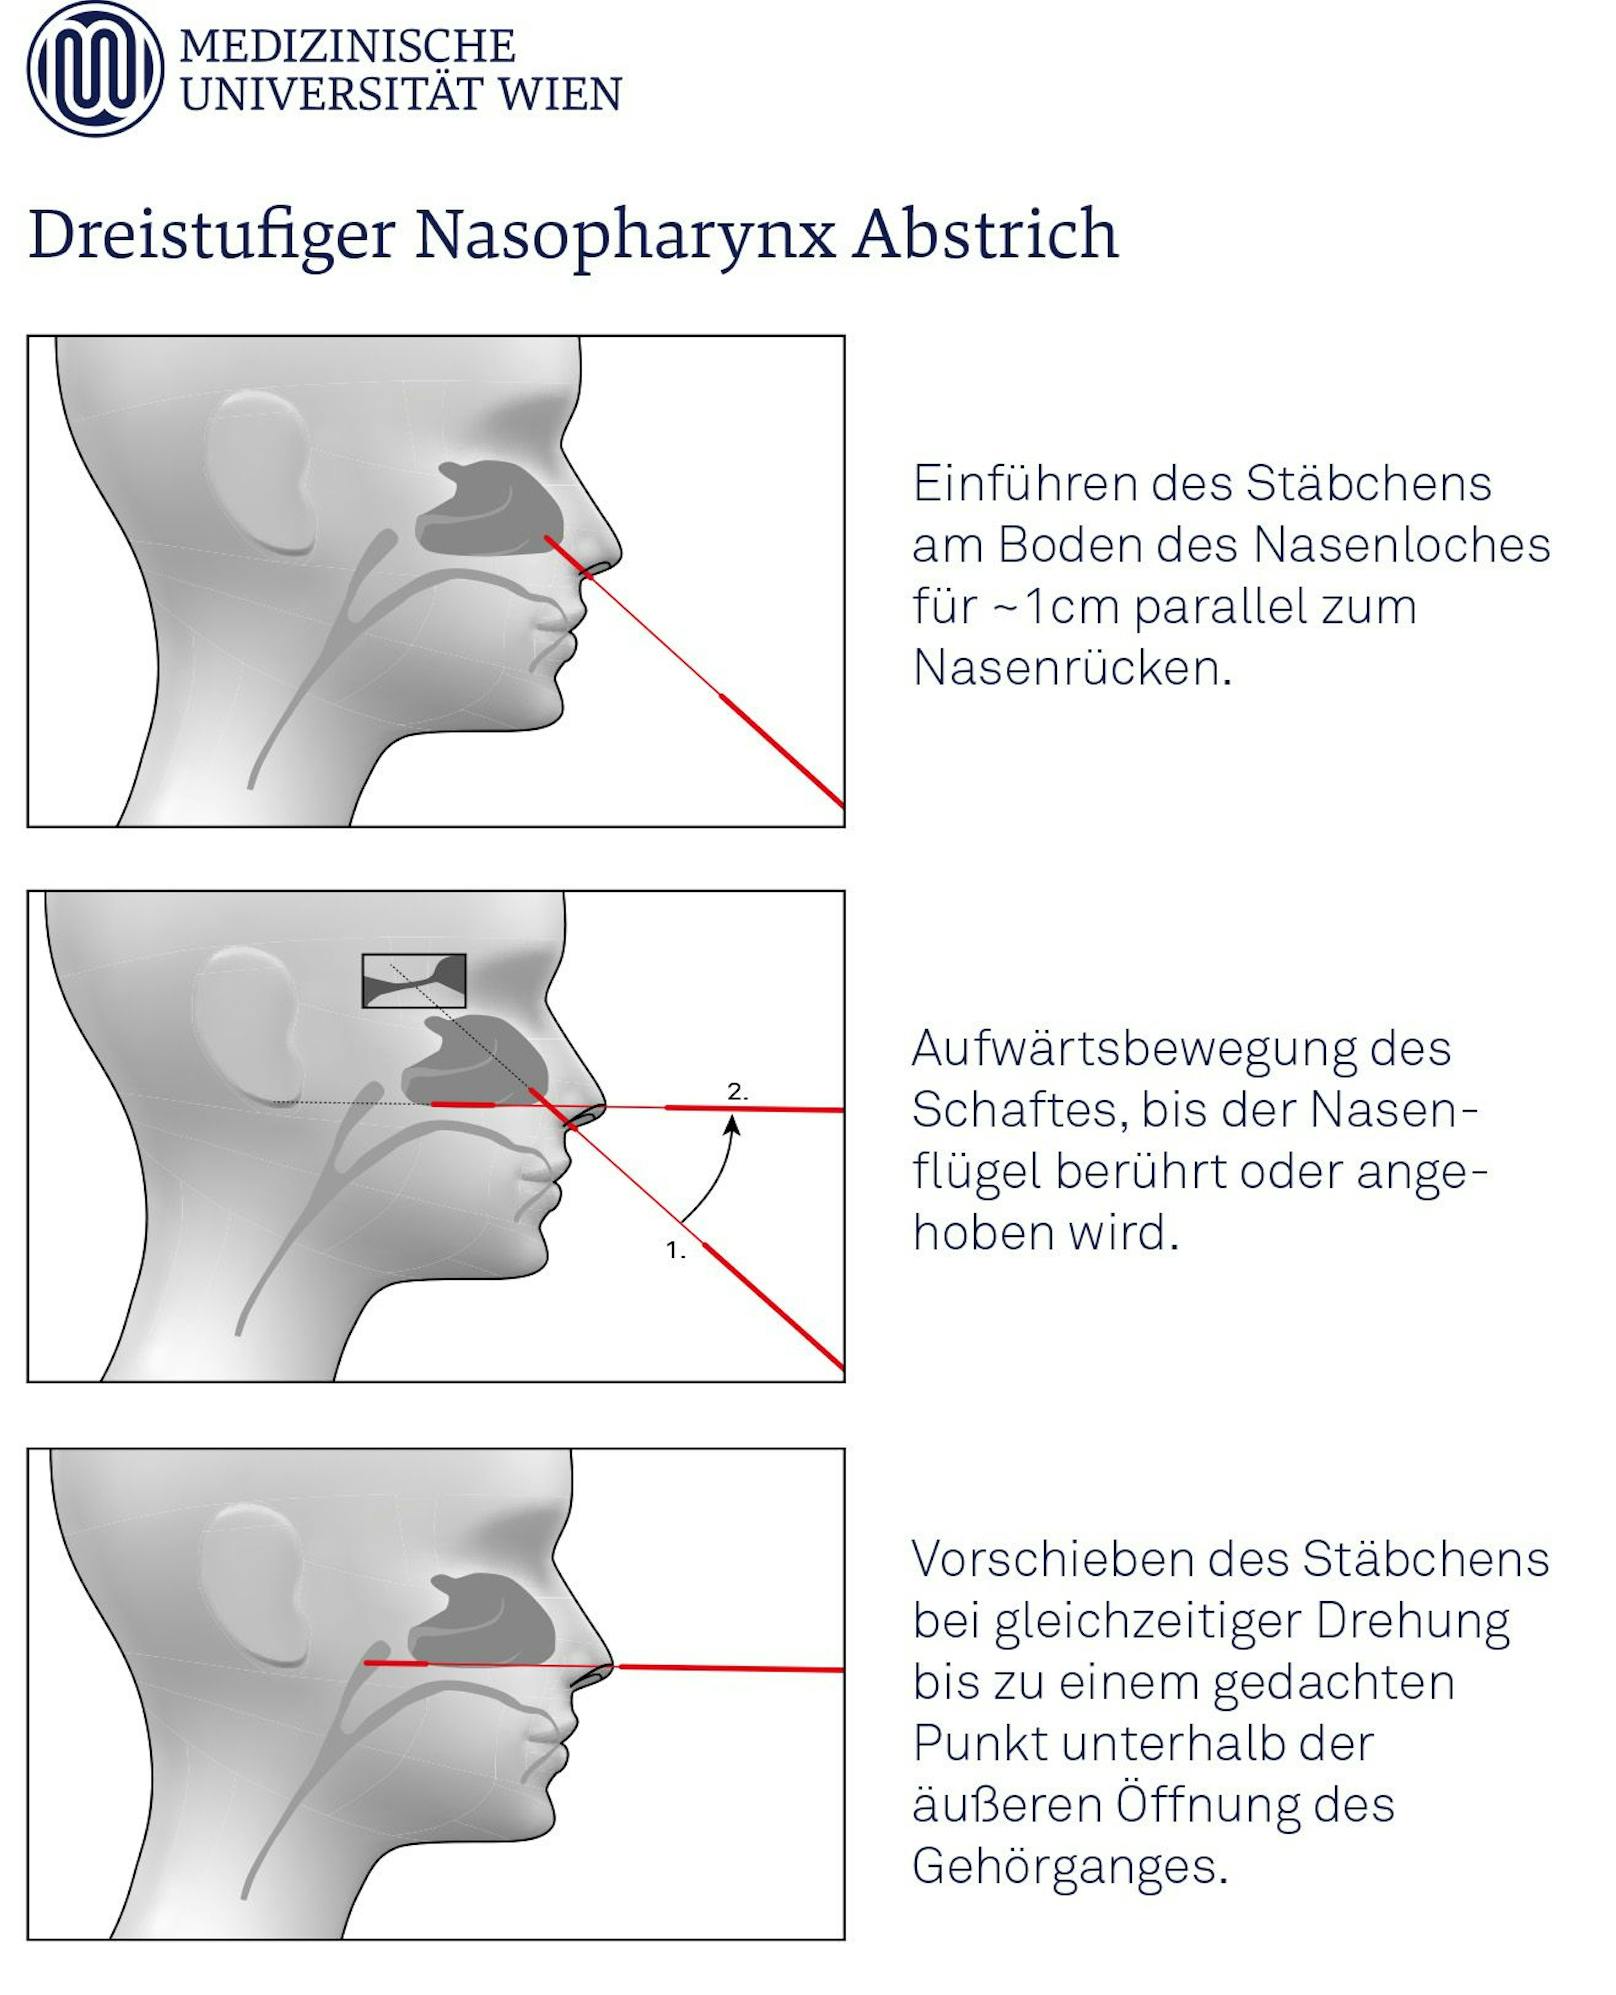 Diesen 3-Stufen-Plan schlägt die MedUni Wien für dir Durchführung von Nasenrachenabstrichen vor.